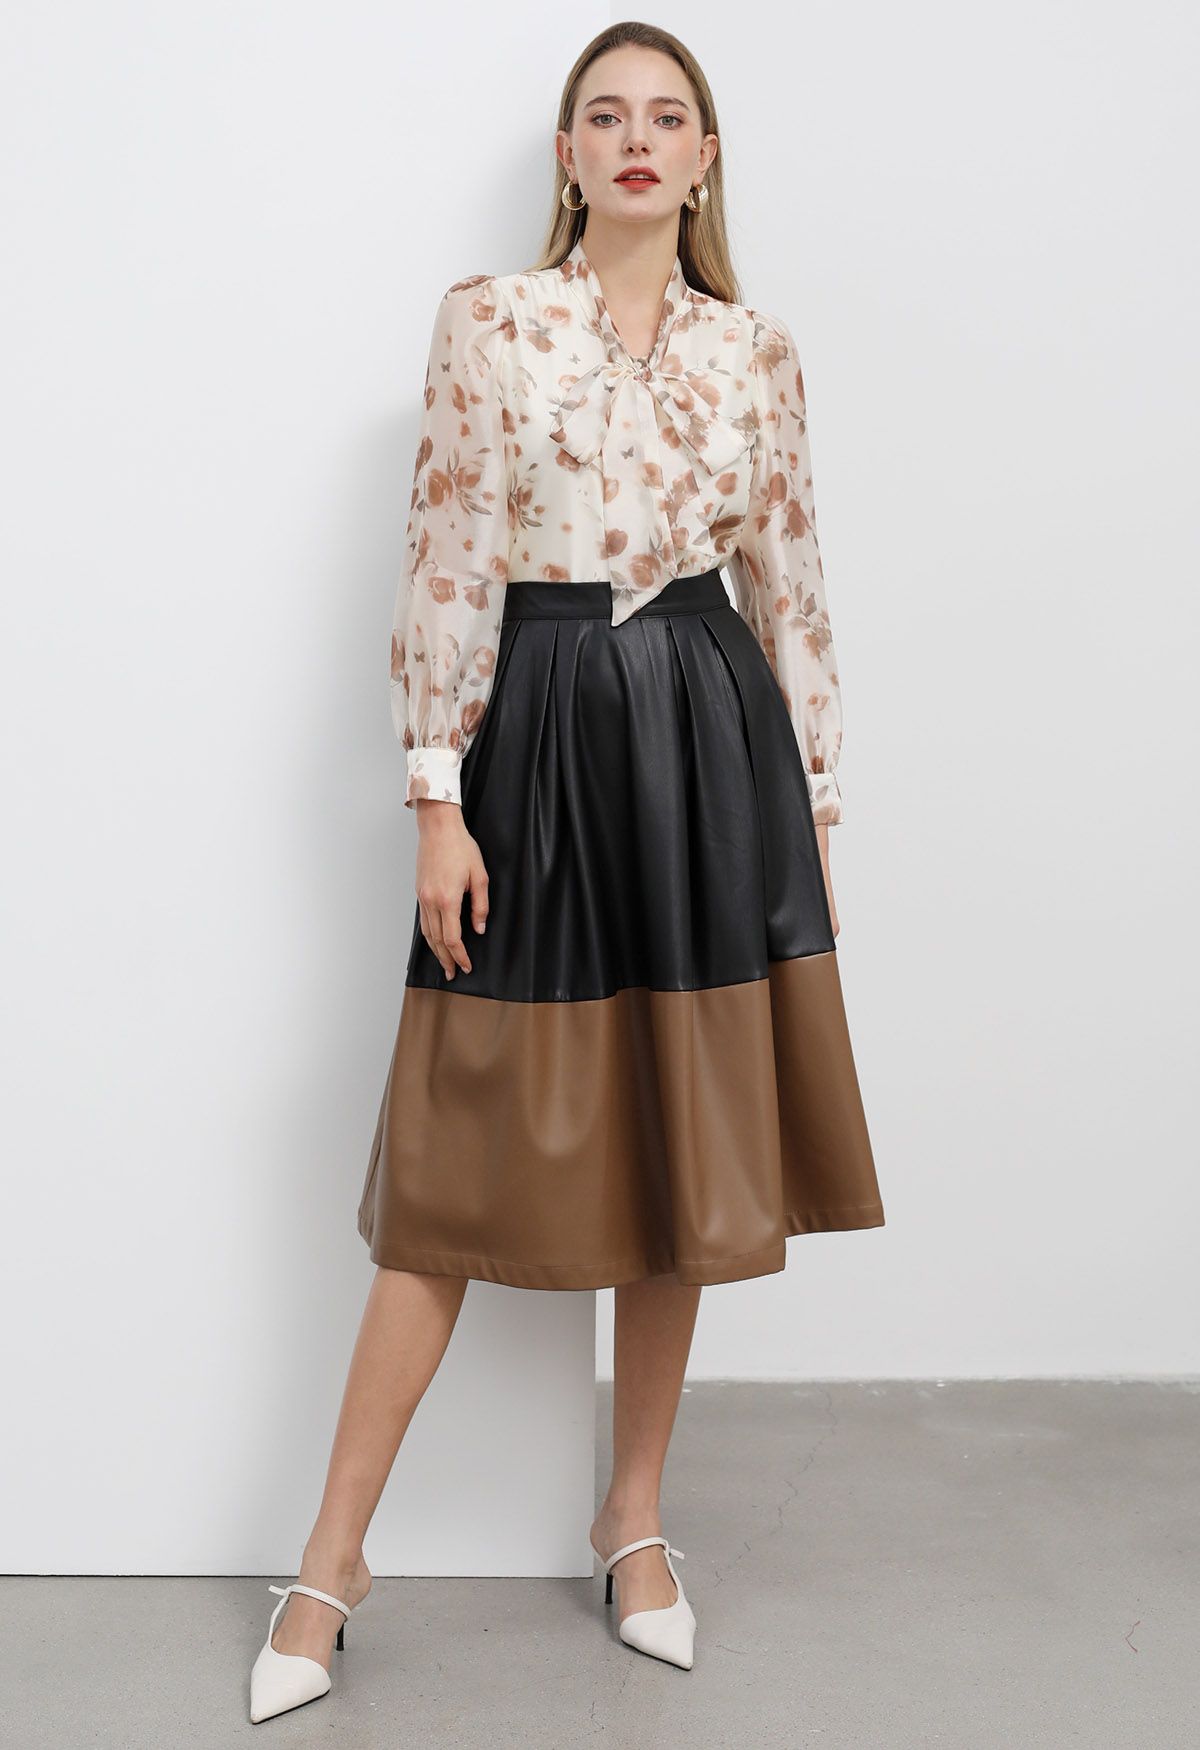 Transparentes Hemd im Herbst-Stil mit Rosen-Schleife